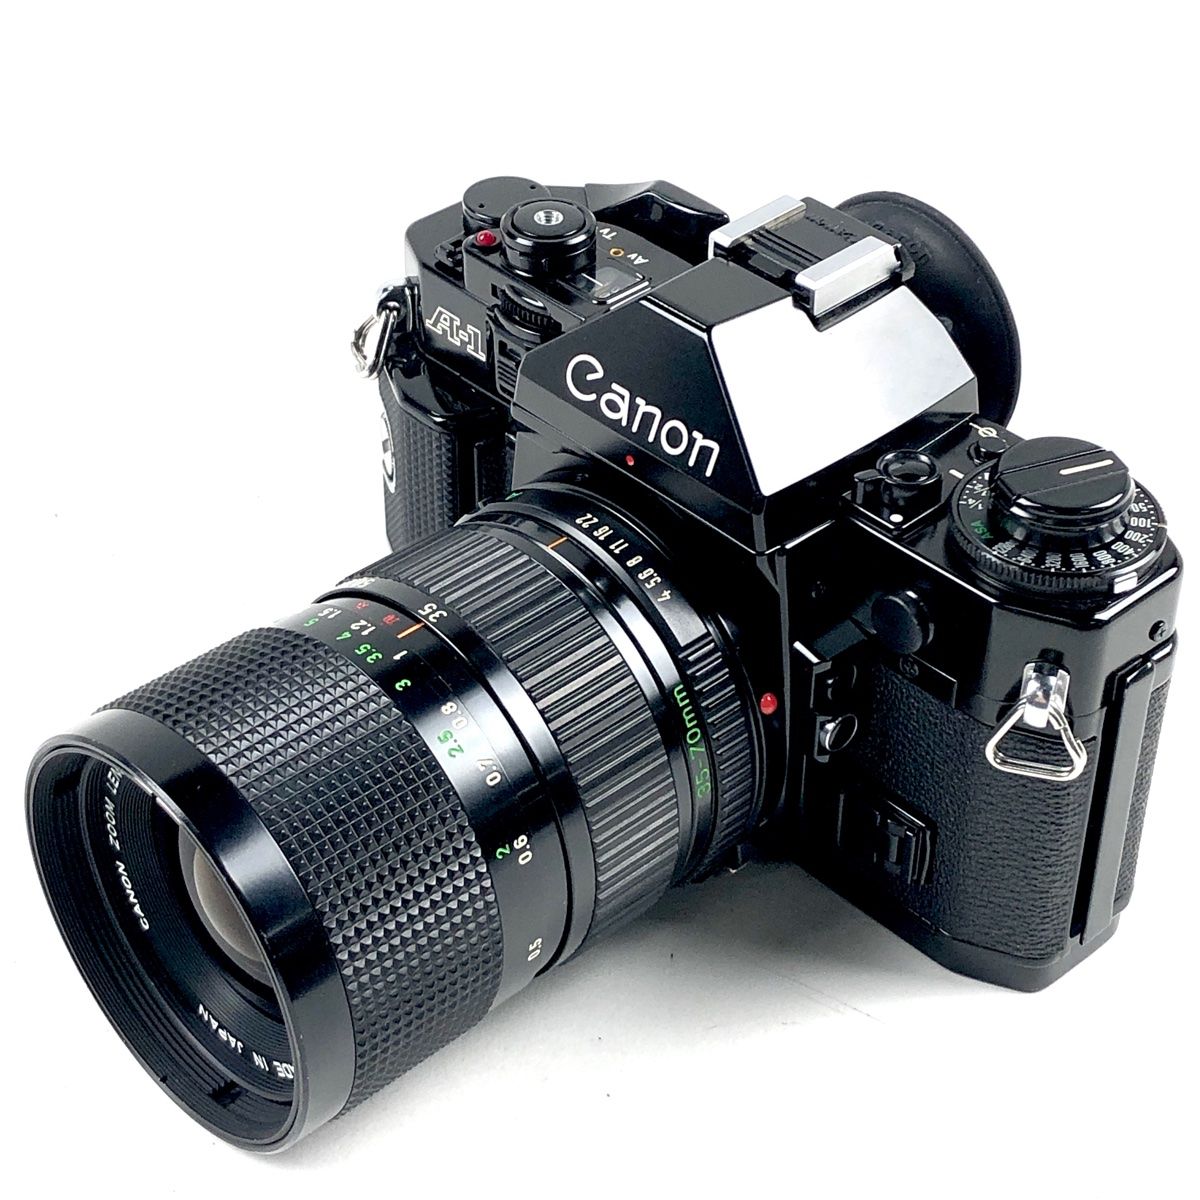 キヤノン Canon A-1 + New FD 35-70mm F4 フィルム マニュアル 